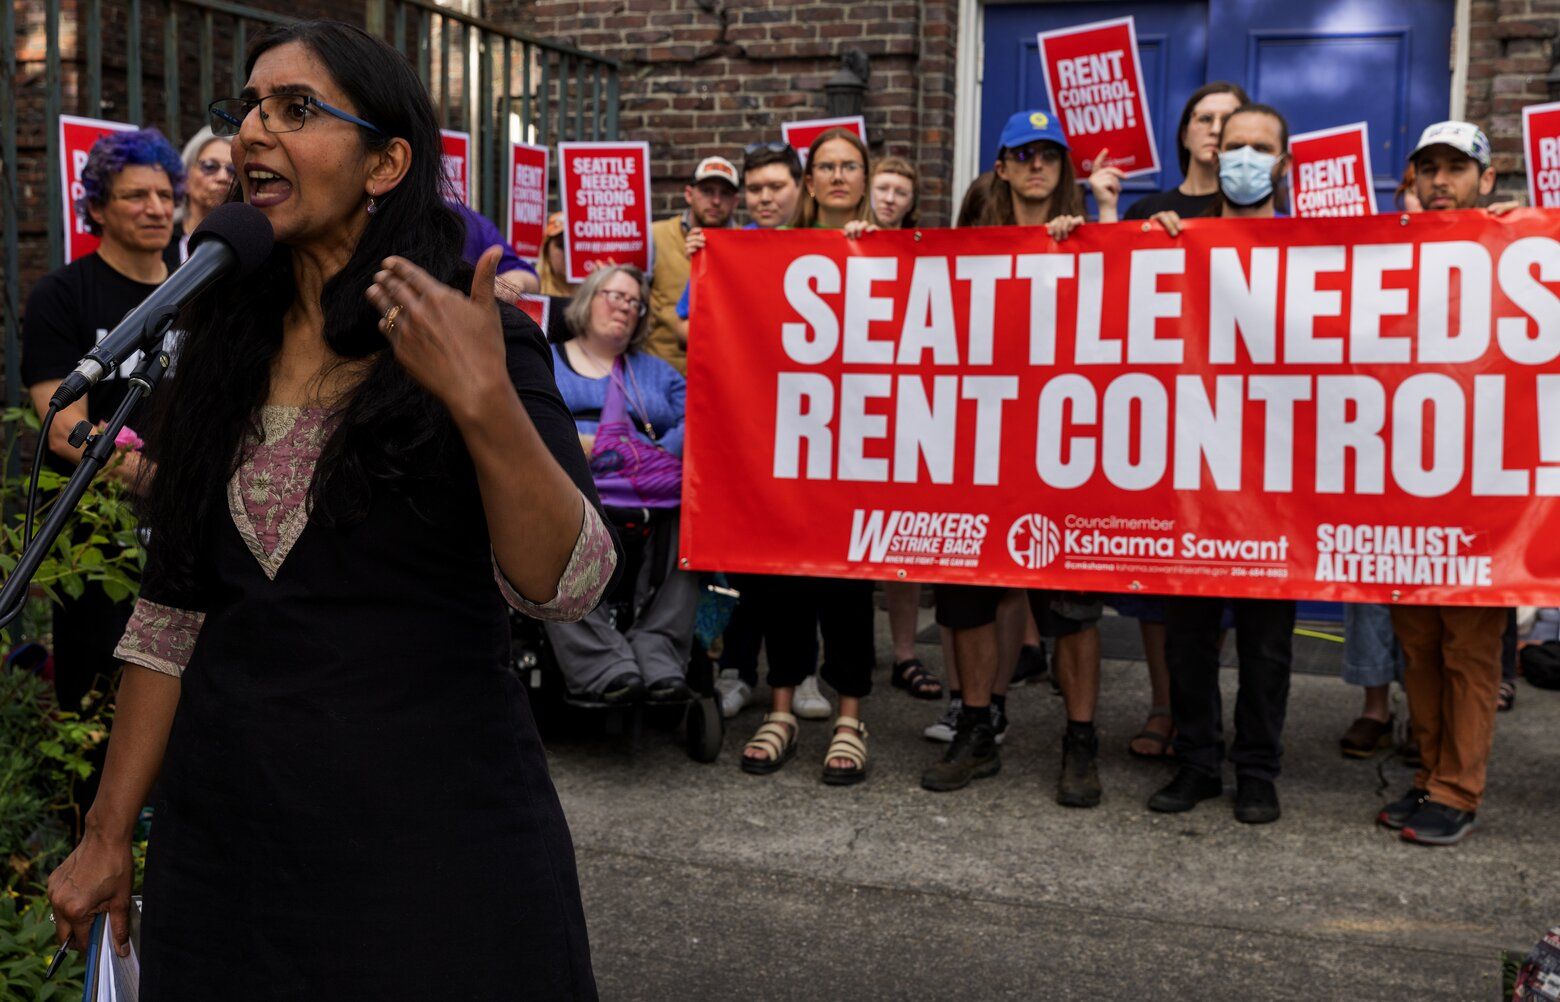 分裂的西雅图市议会将就租金控制进行投票| Bendi News